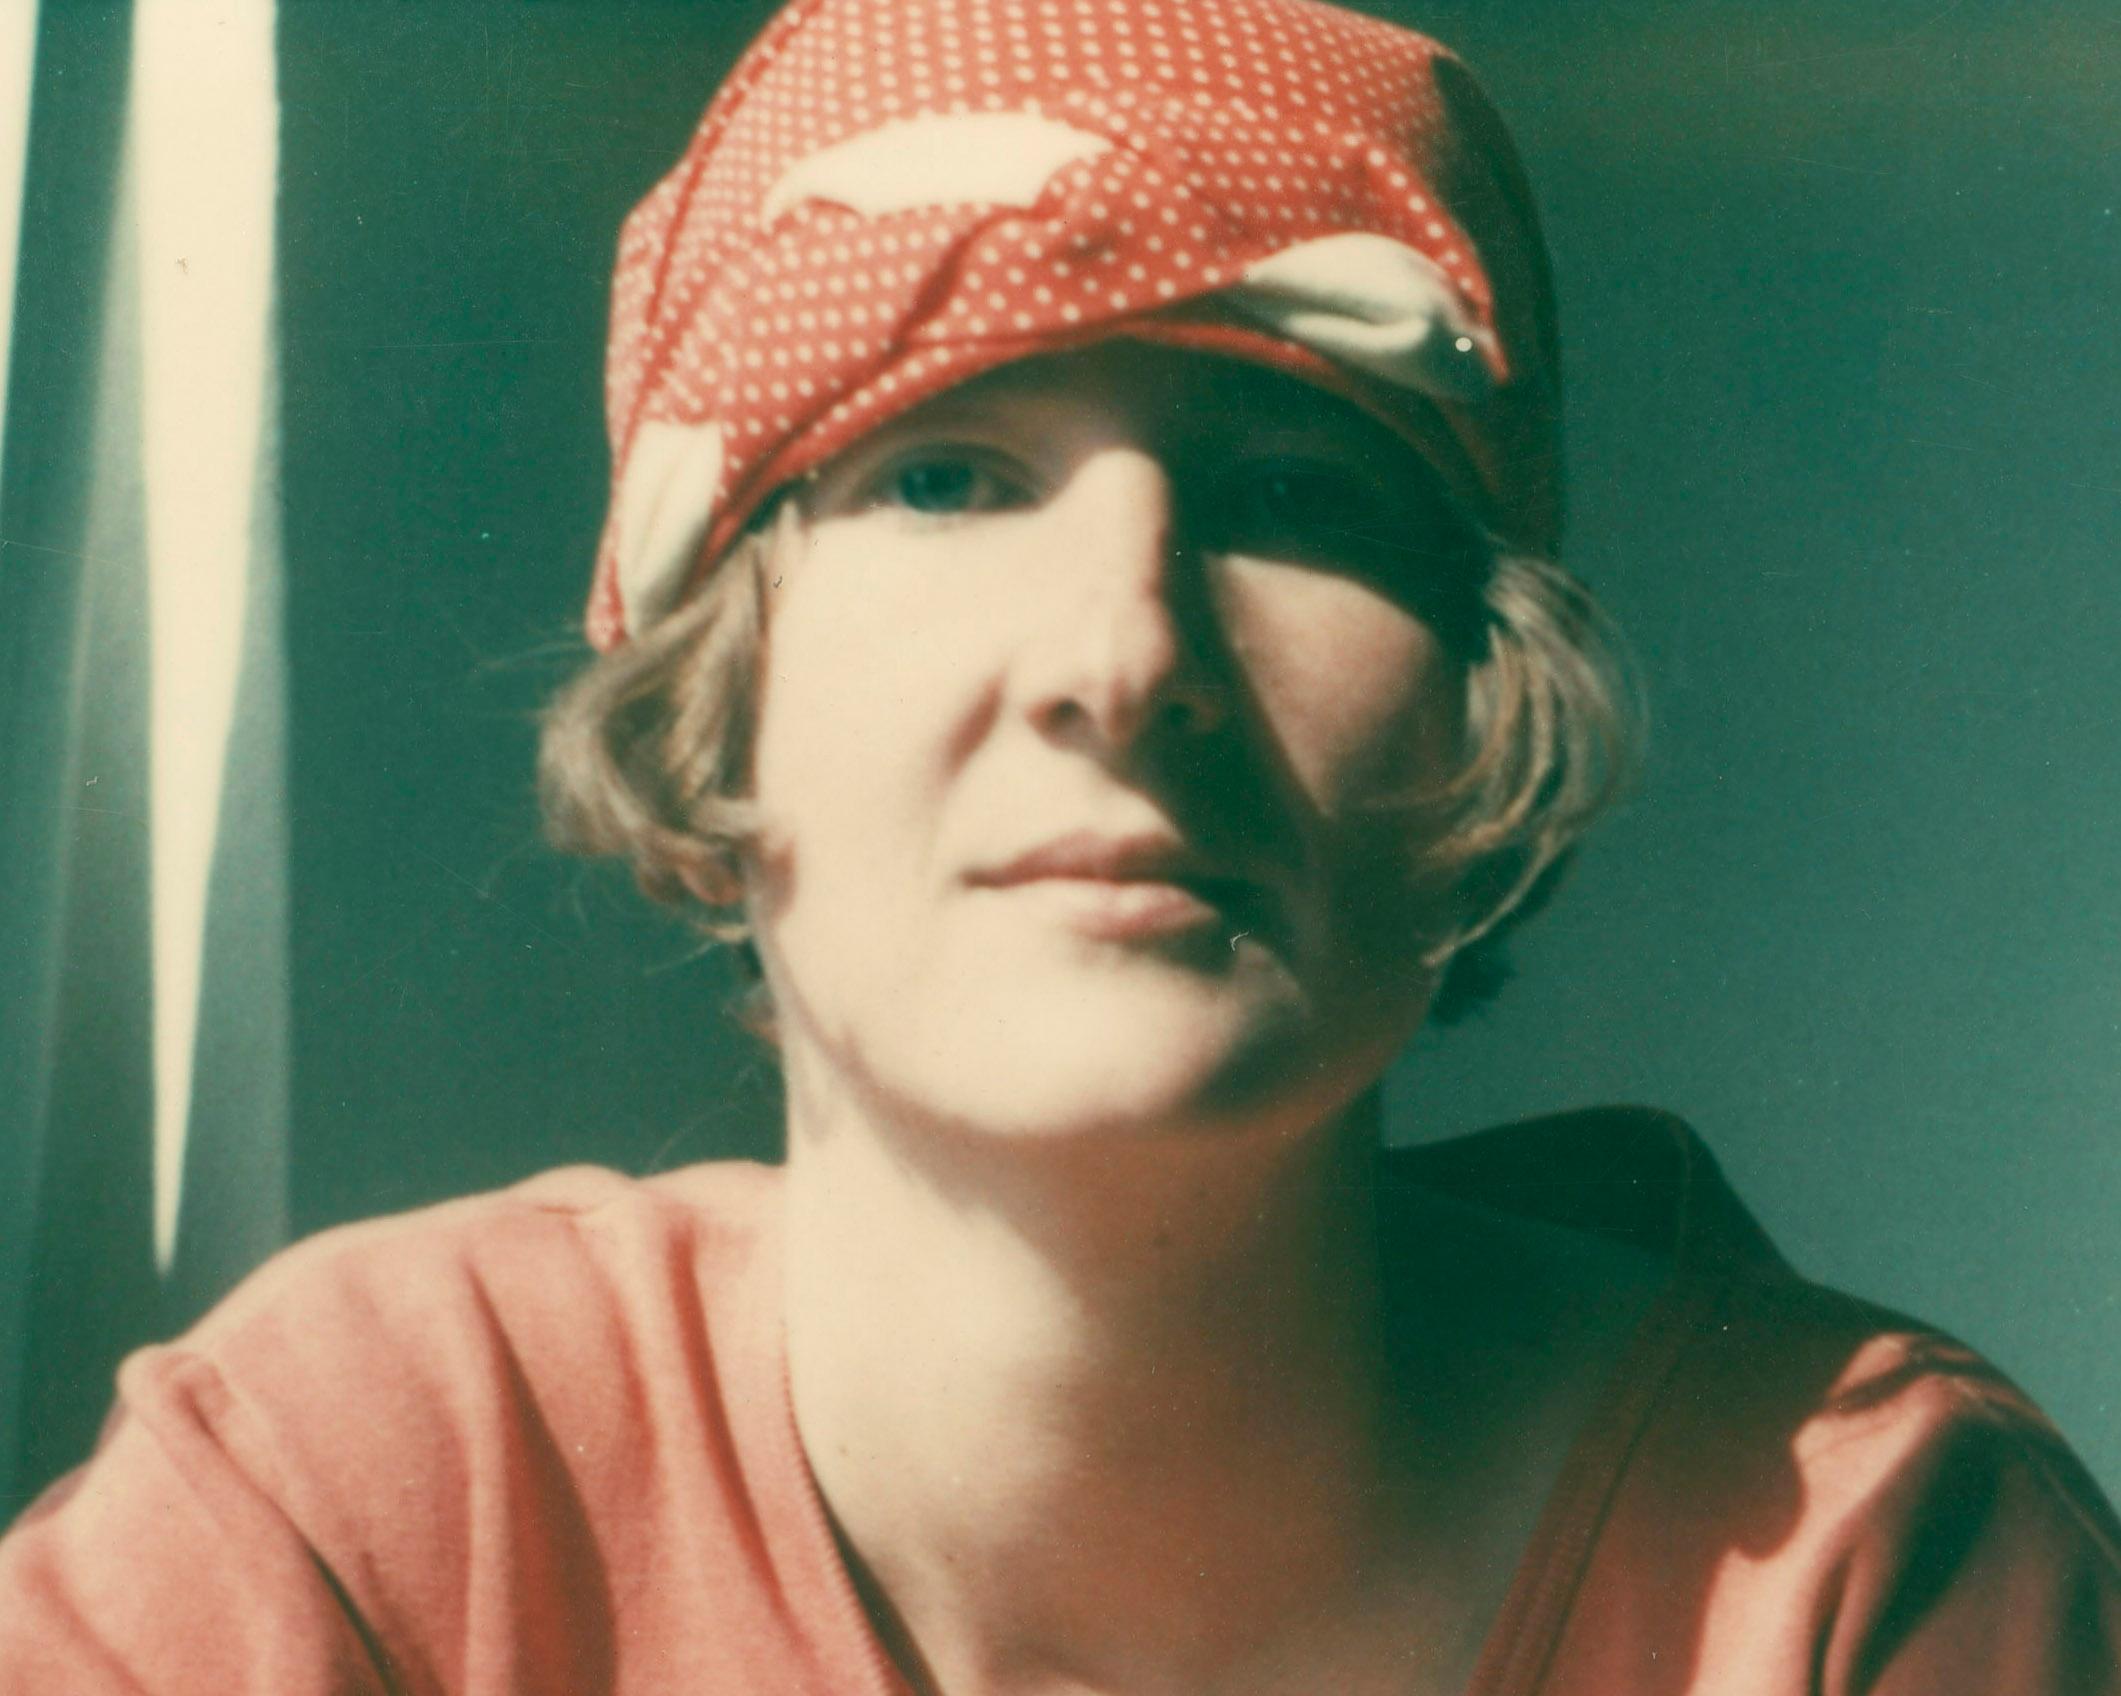 Jeanne, 1993 - Contemporary Photograph by Stefanie Schneider